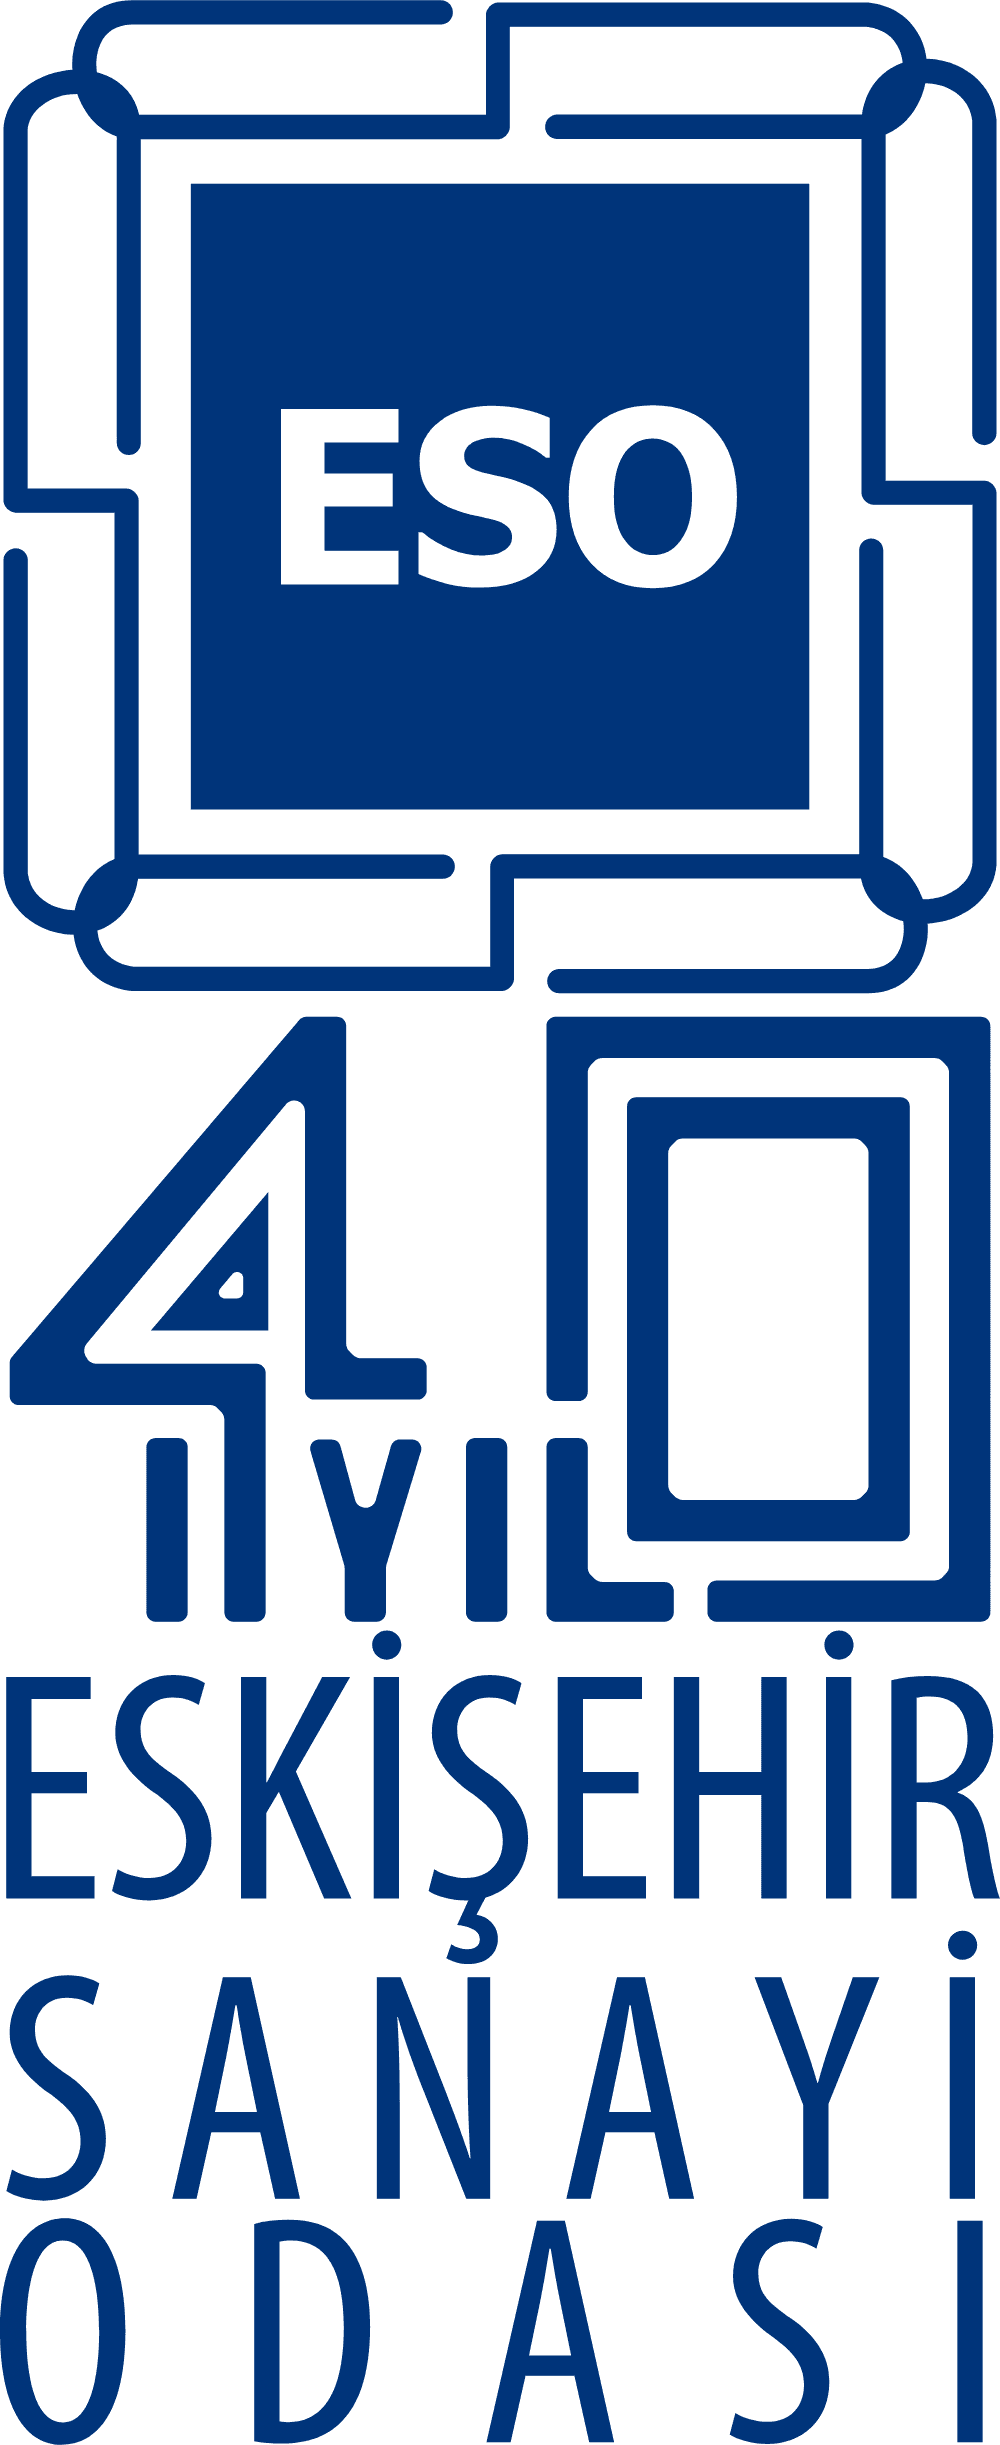 Eskisehir Sanayi Odasi 40.Yil Logo download